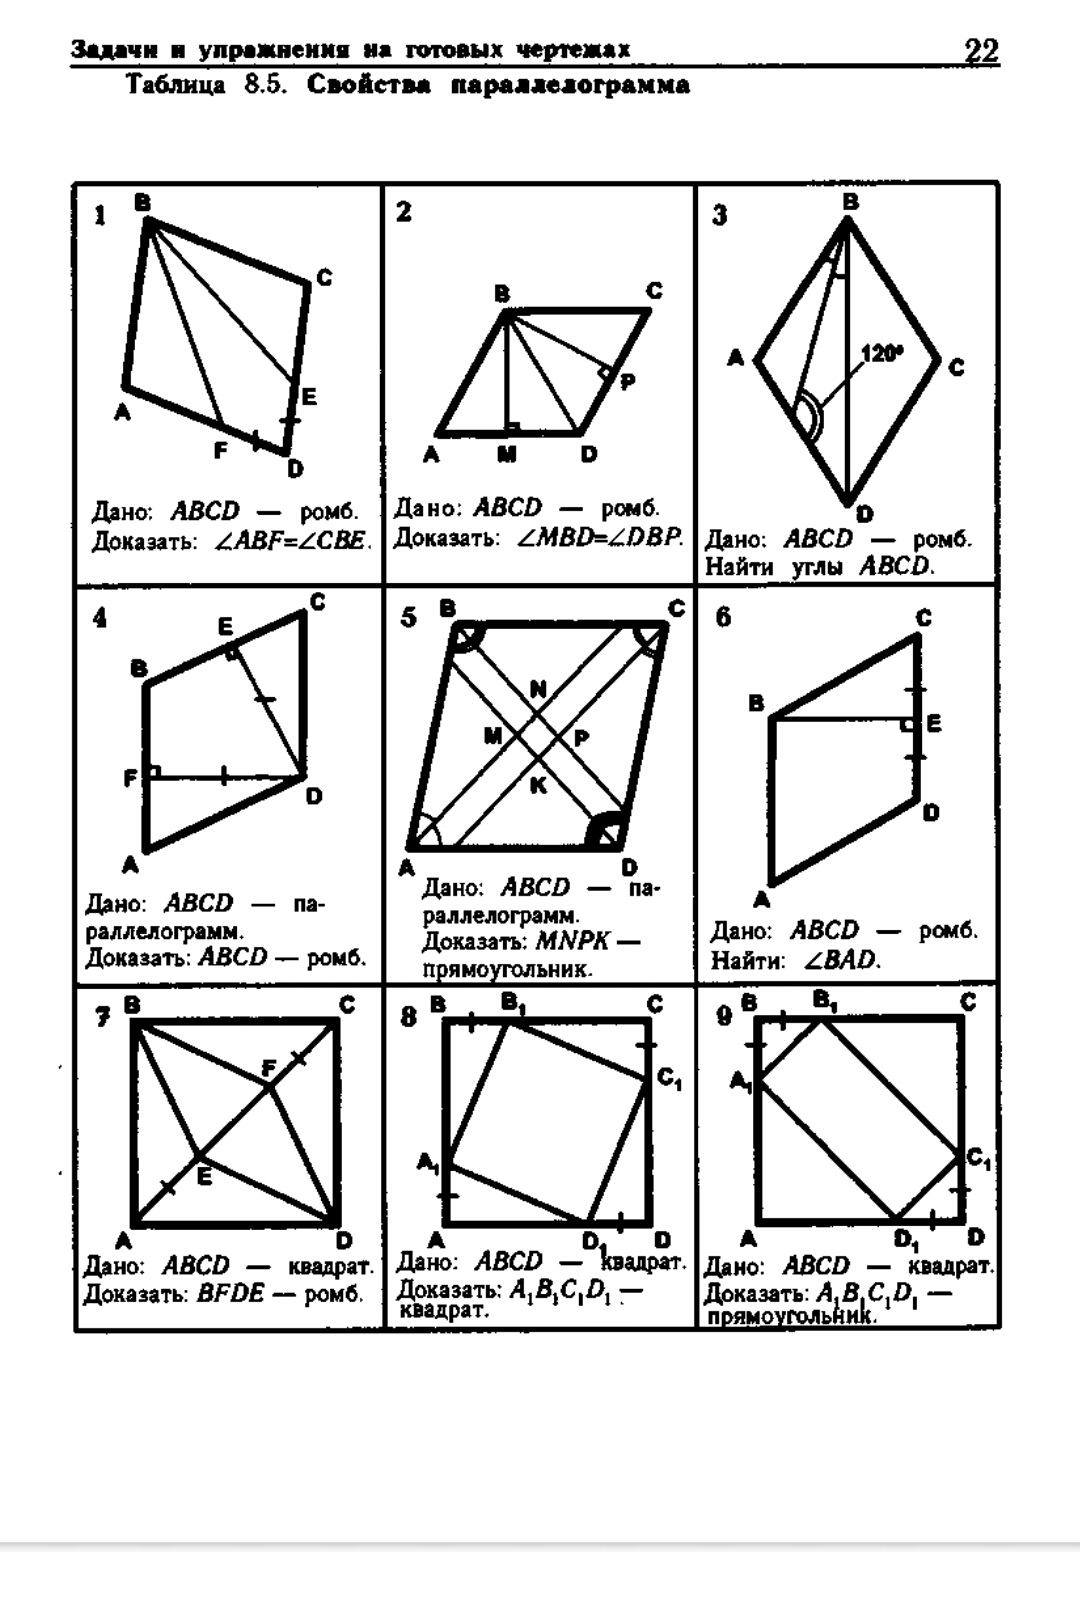 Геометрия на чертежах 7 9. Рабинович геометрия 8.2 таблица. Задачи на готовых чертежах 8 класс геометрия Атанасян прямоугольник. Задачи по готовым чертежам параллелограмм. Таблица 9.3 геометрия Рабинович.